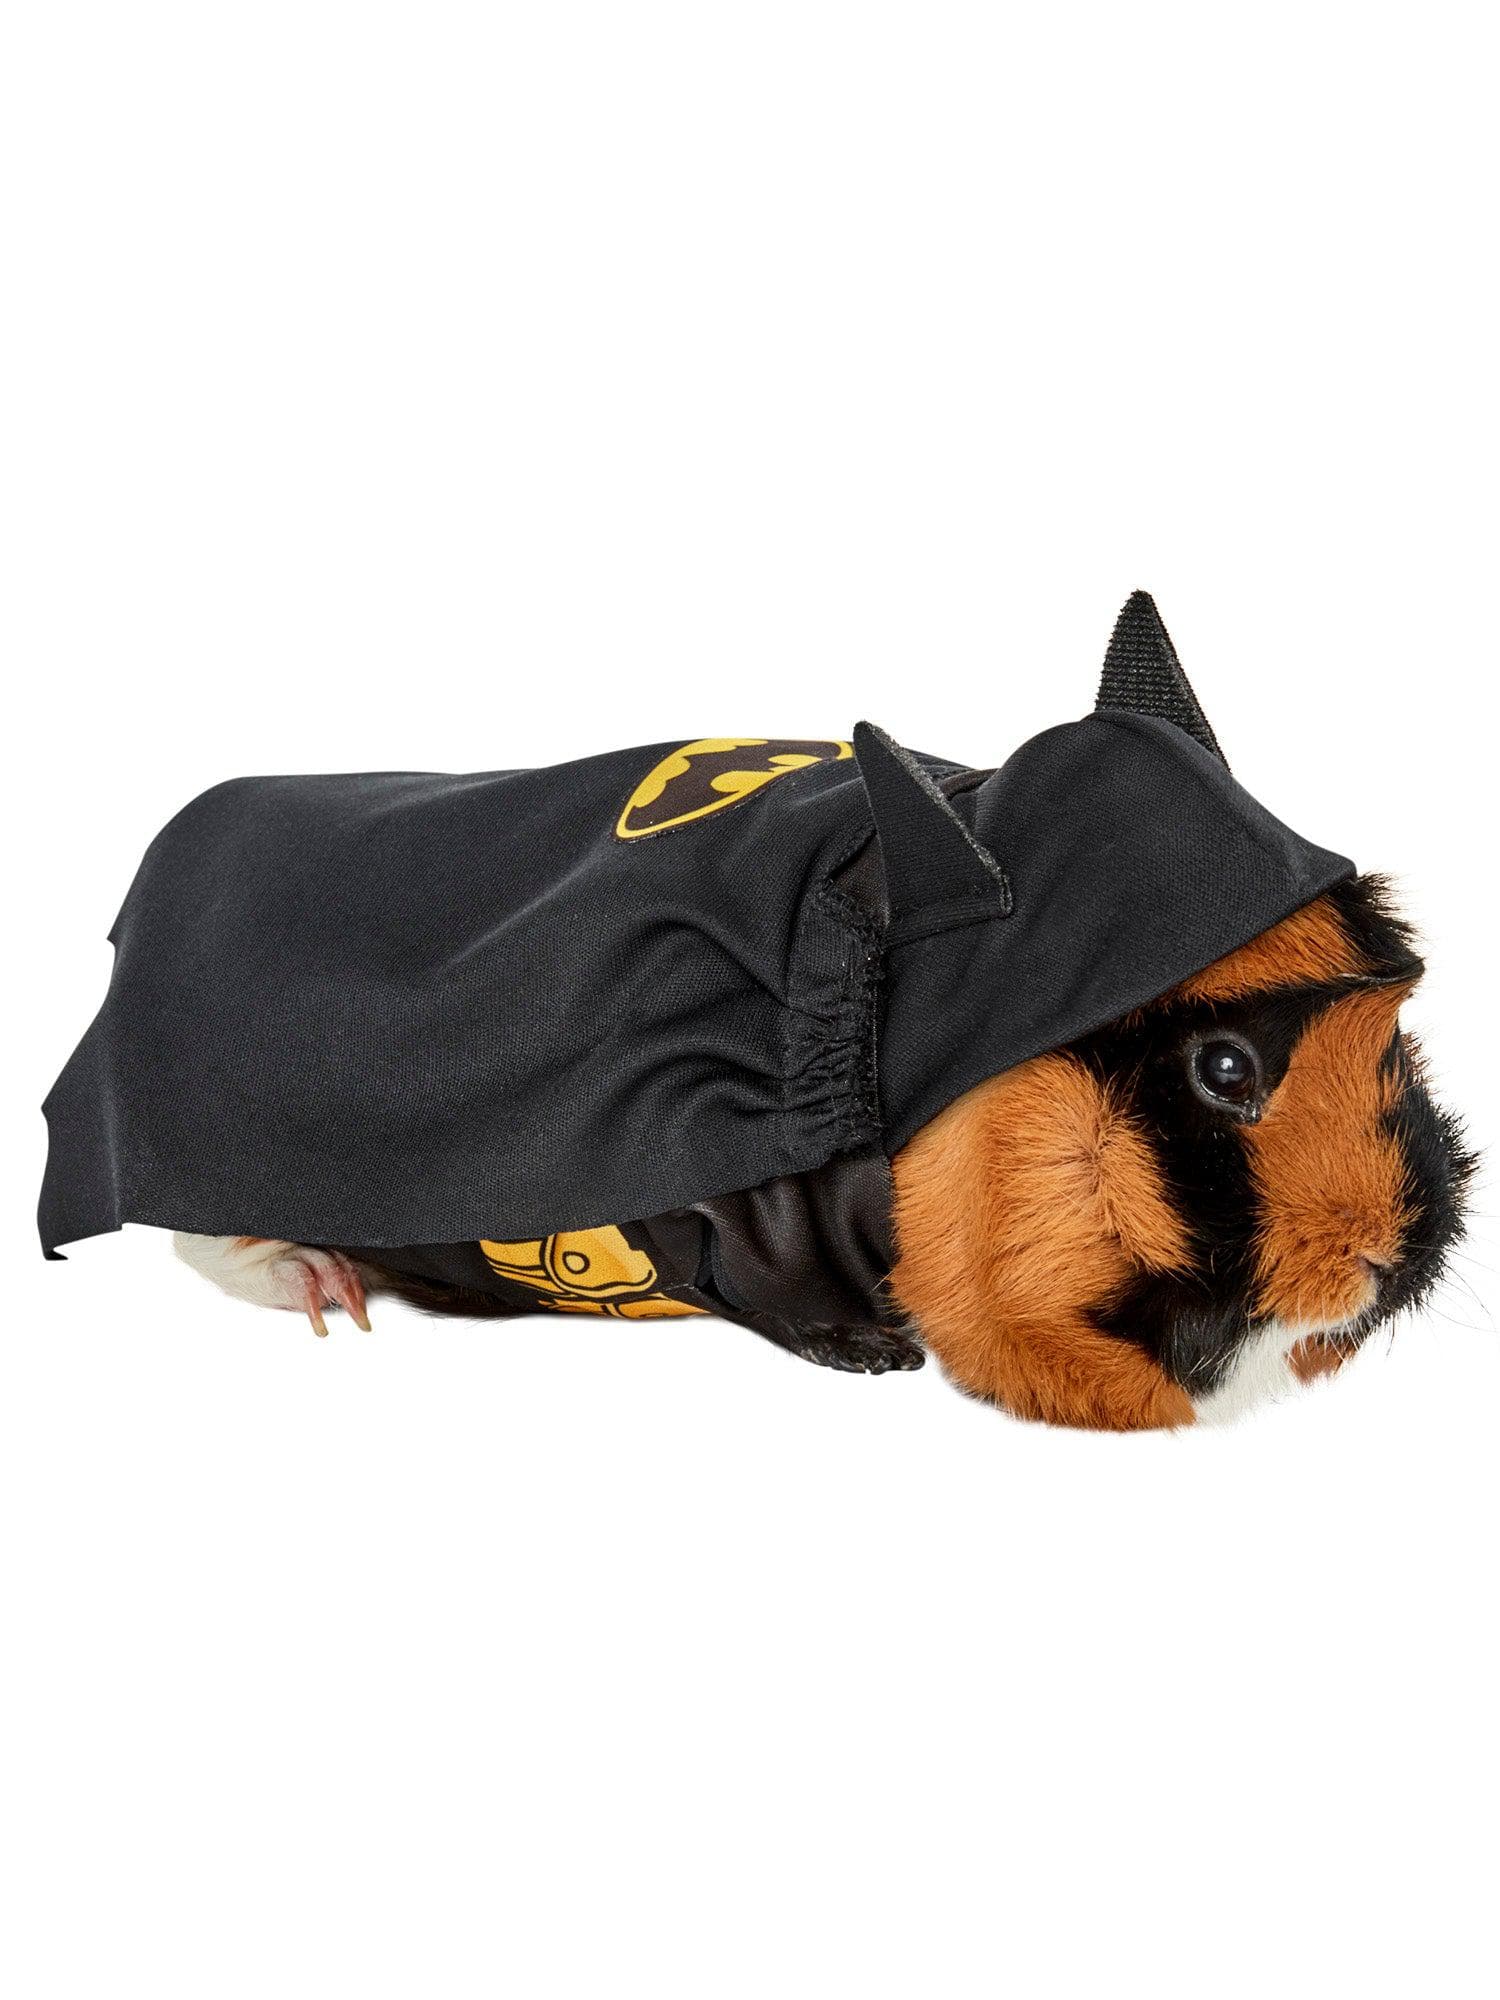 Batman Small Pet Costume - costumes.com